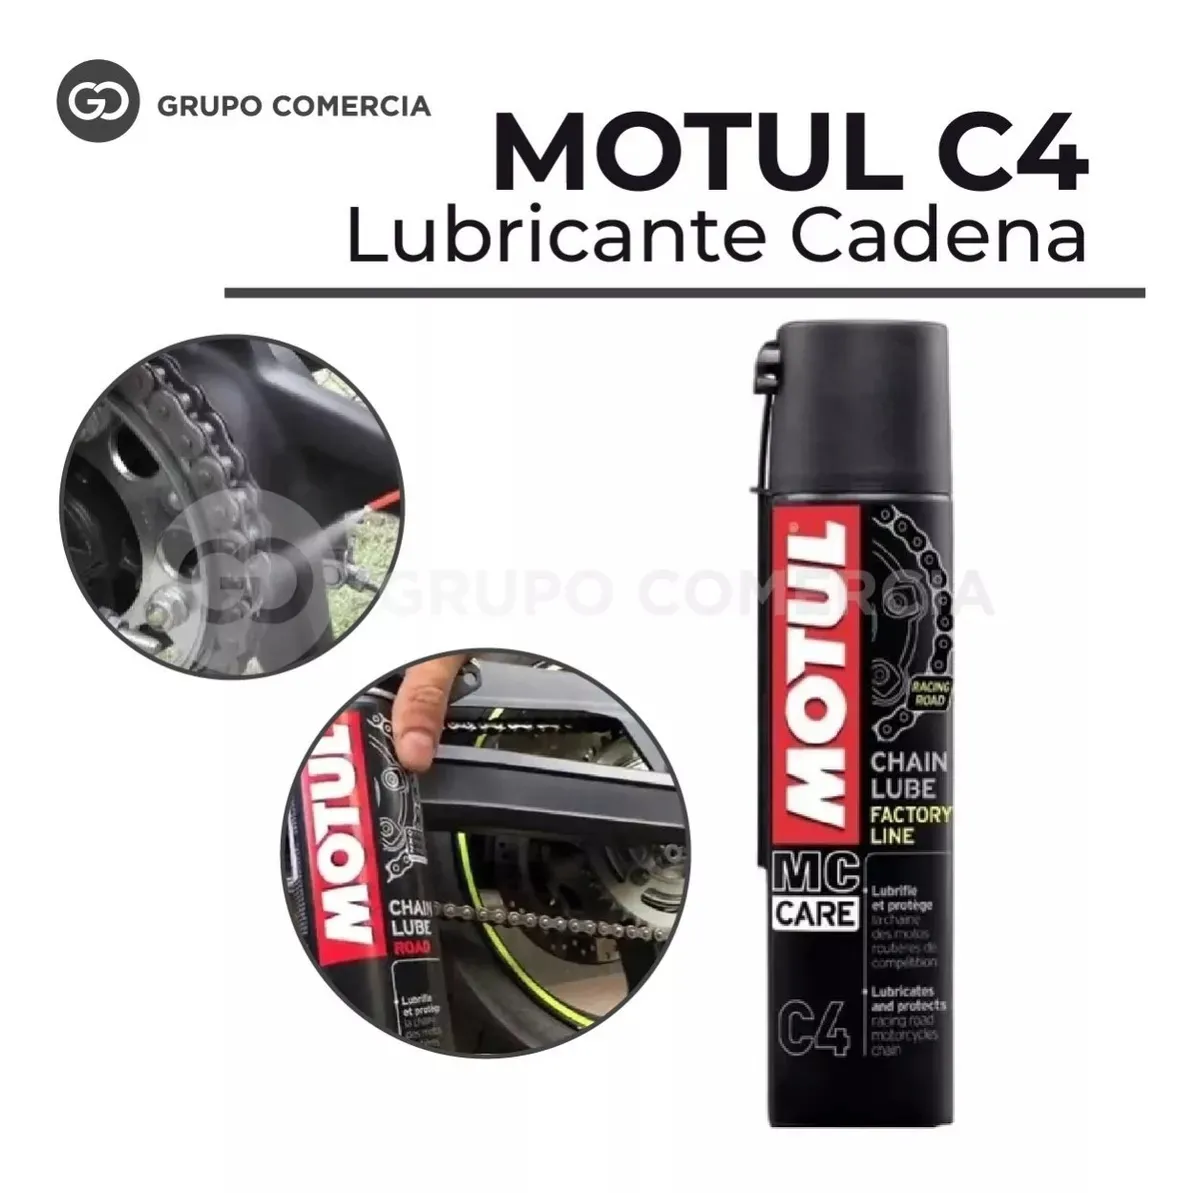 Lubricante Cadena Motul C4 Chain Lube Moto